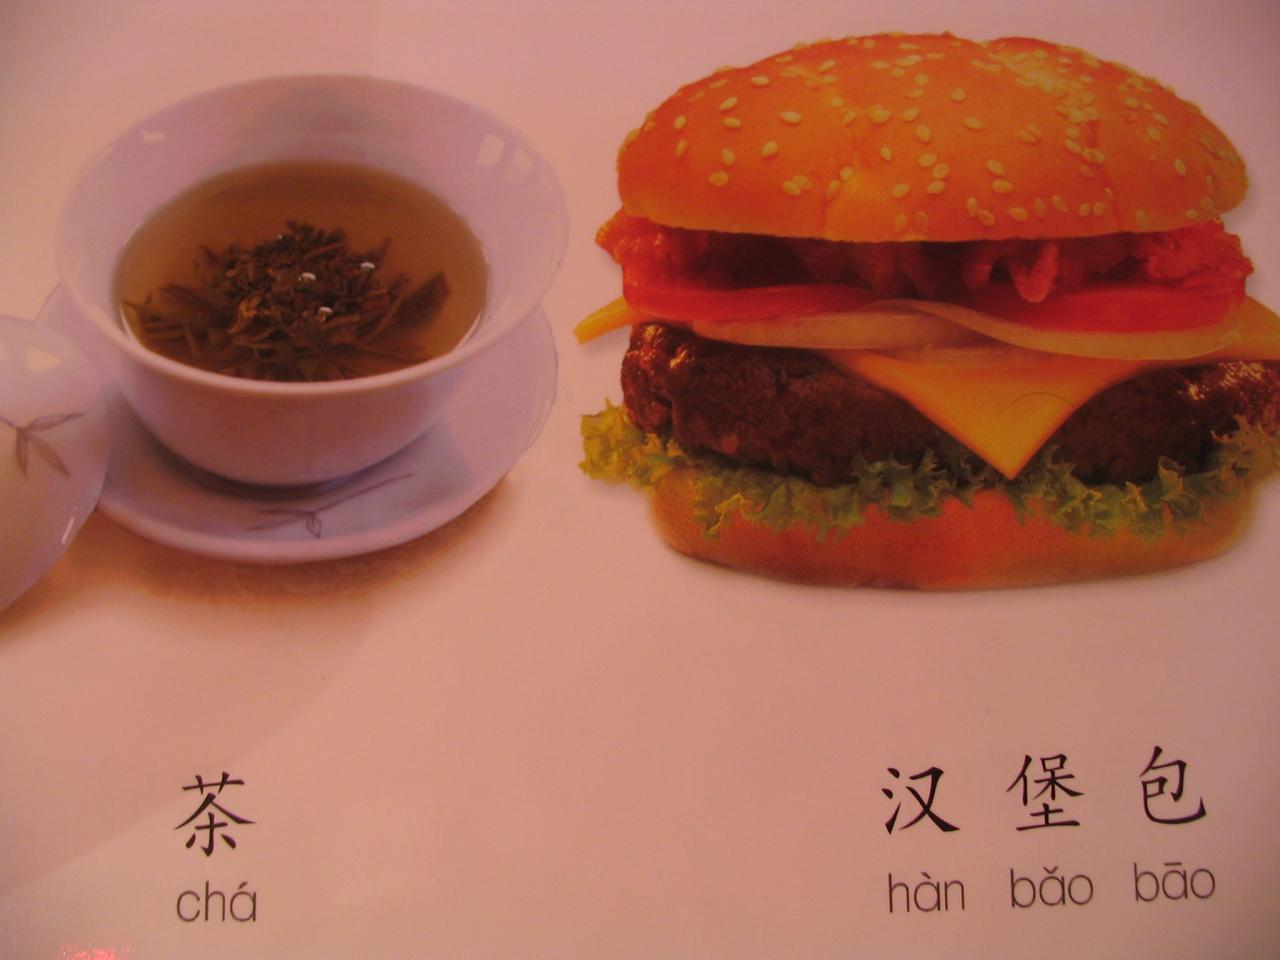 thé/hamburger